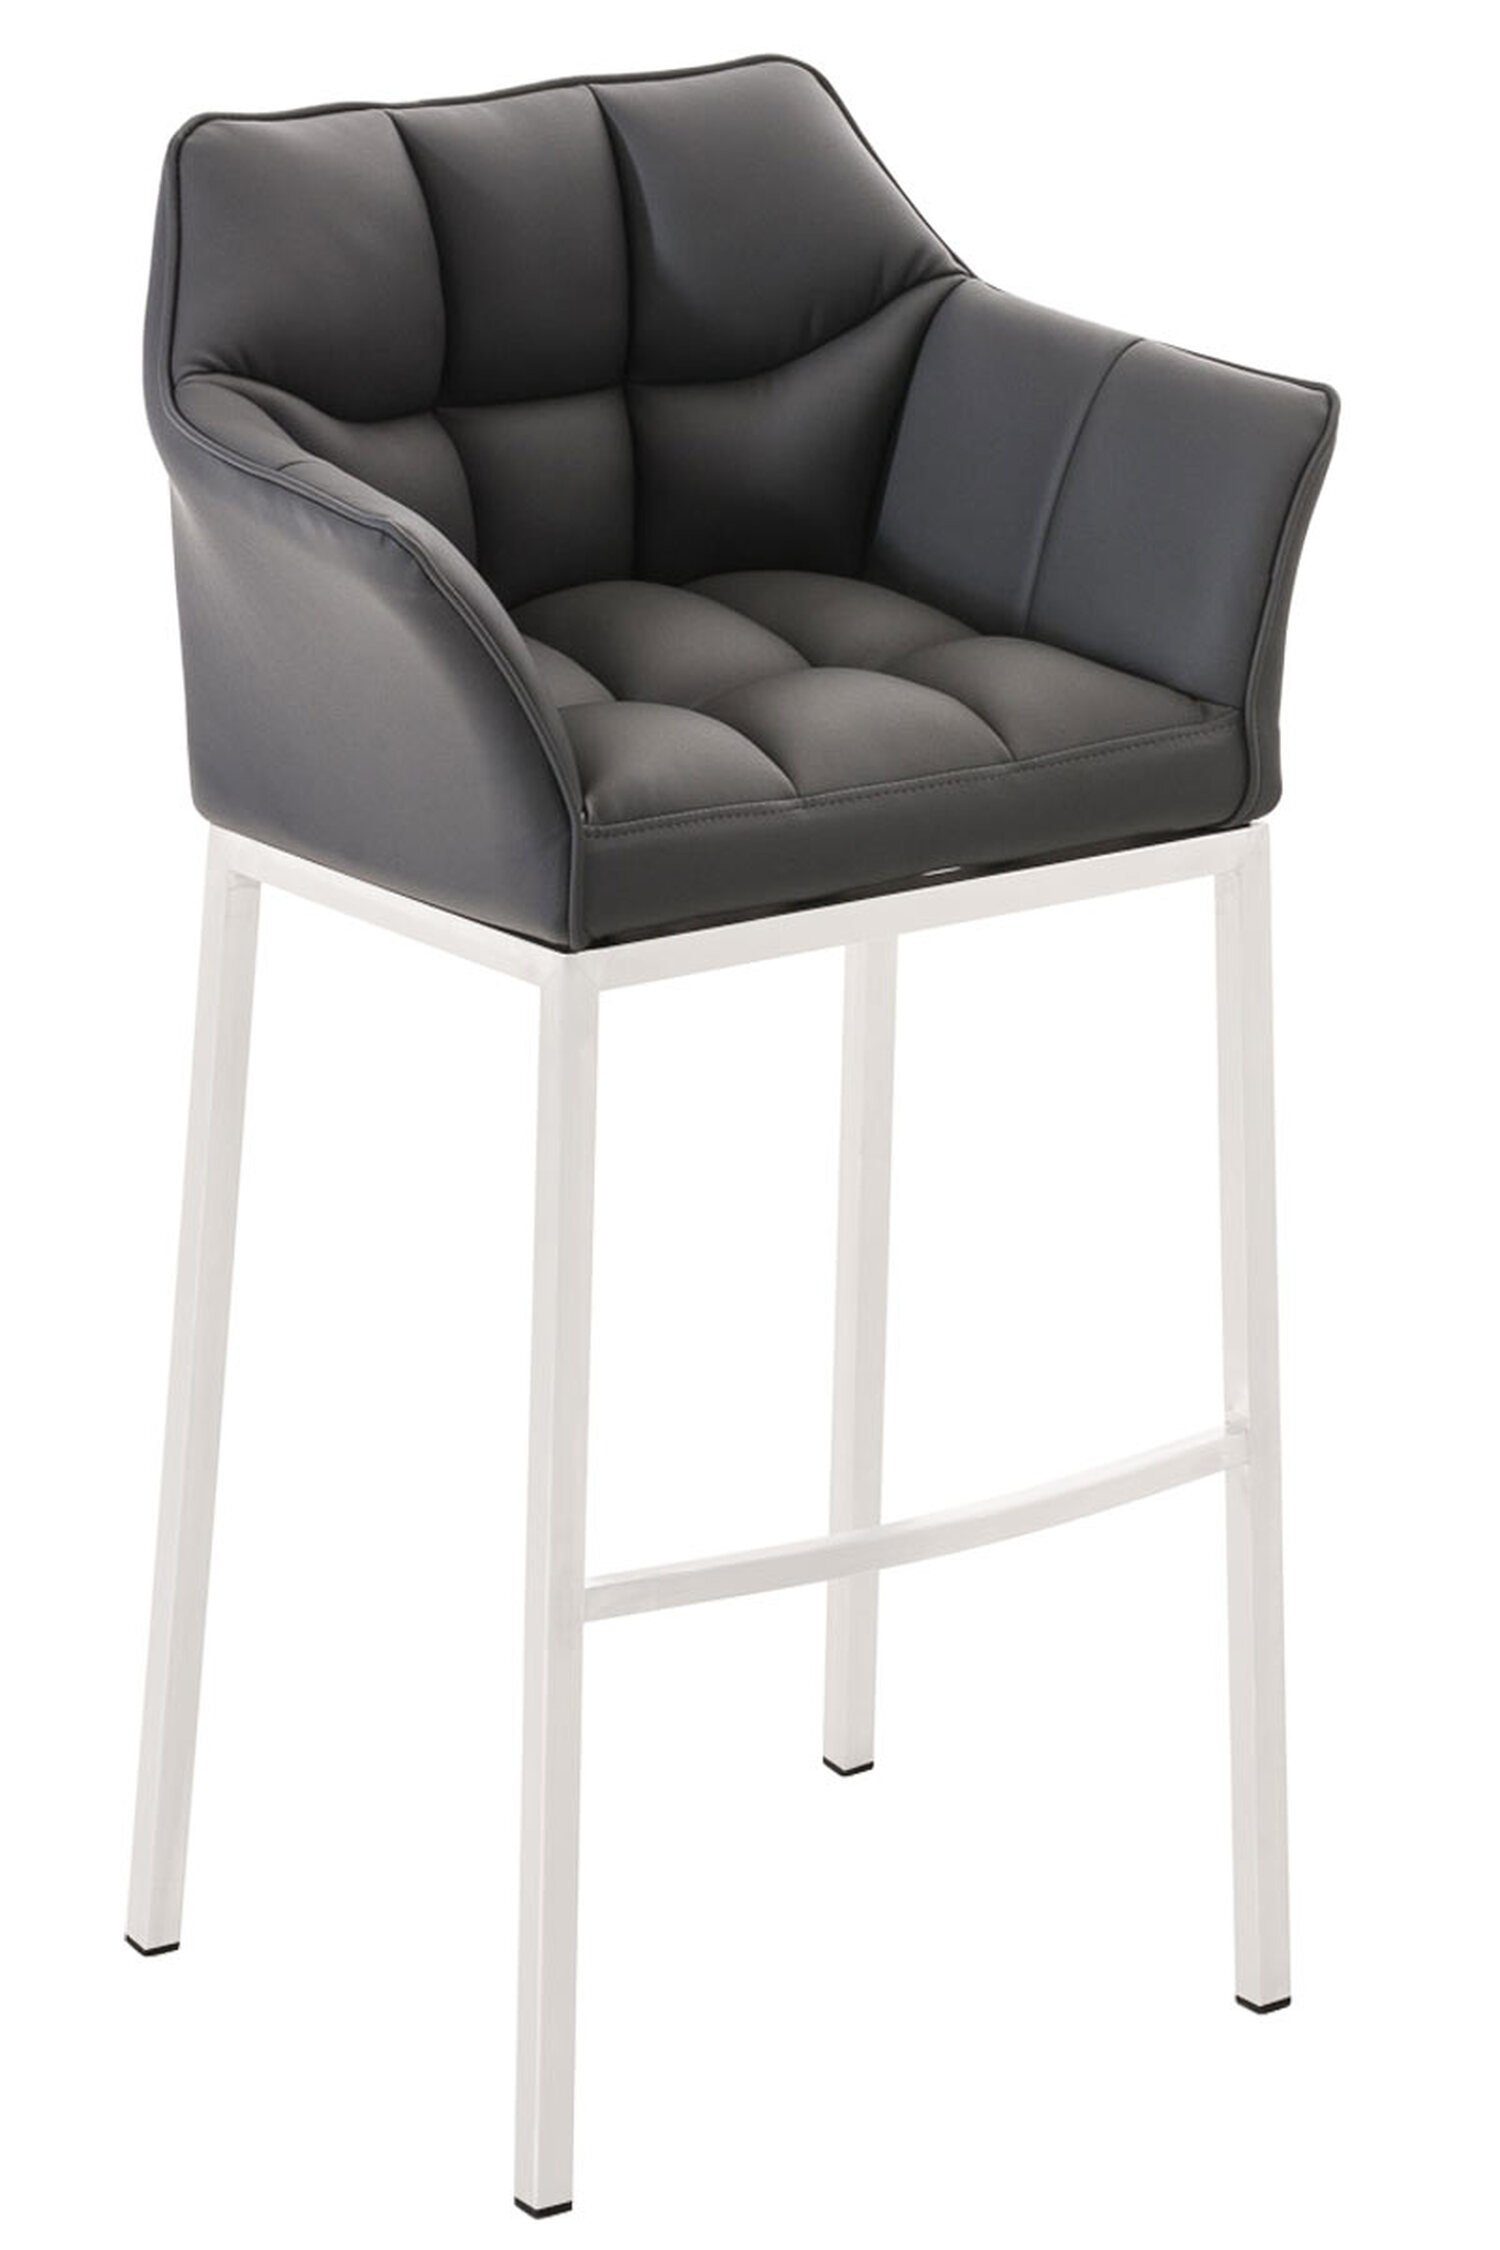 TPFLiving Barhocker Damaso (mit Rückenlehne und Fußstütze - Hocker für Theke & Küche), 4-Fuß Gestell weiß - Sitzfläche: Kunstleder Grau